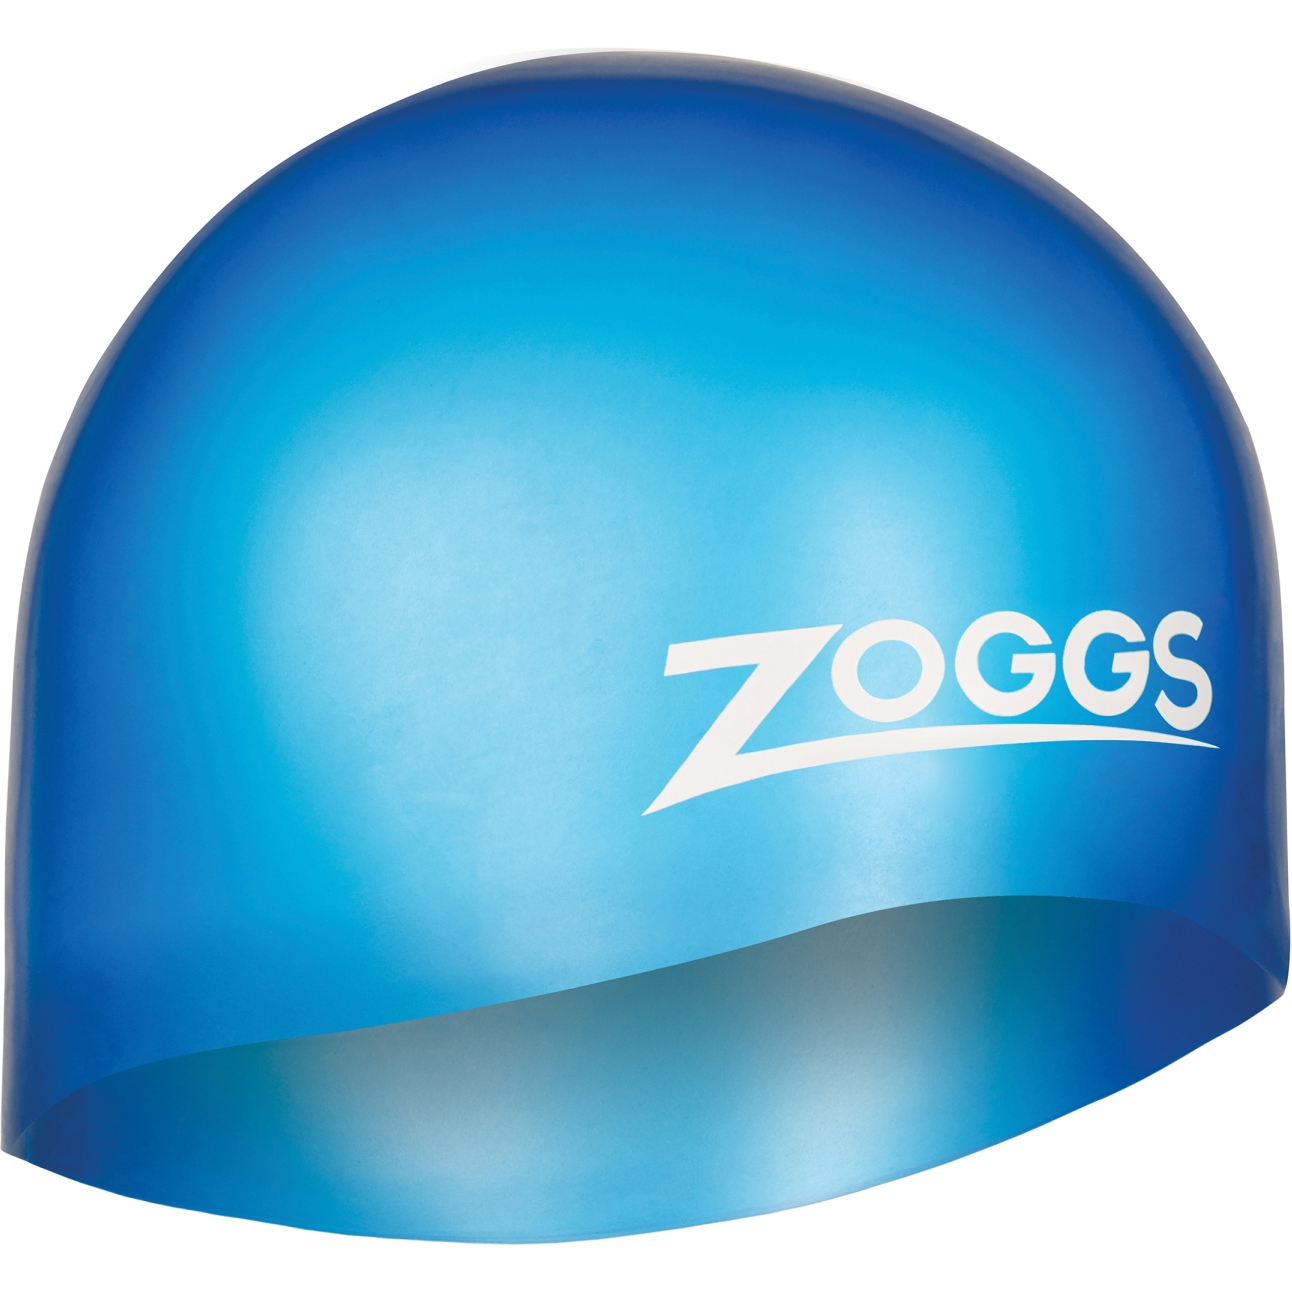 Produktbild von Zoggs Easy Fit Silicone Badekappe - blue